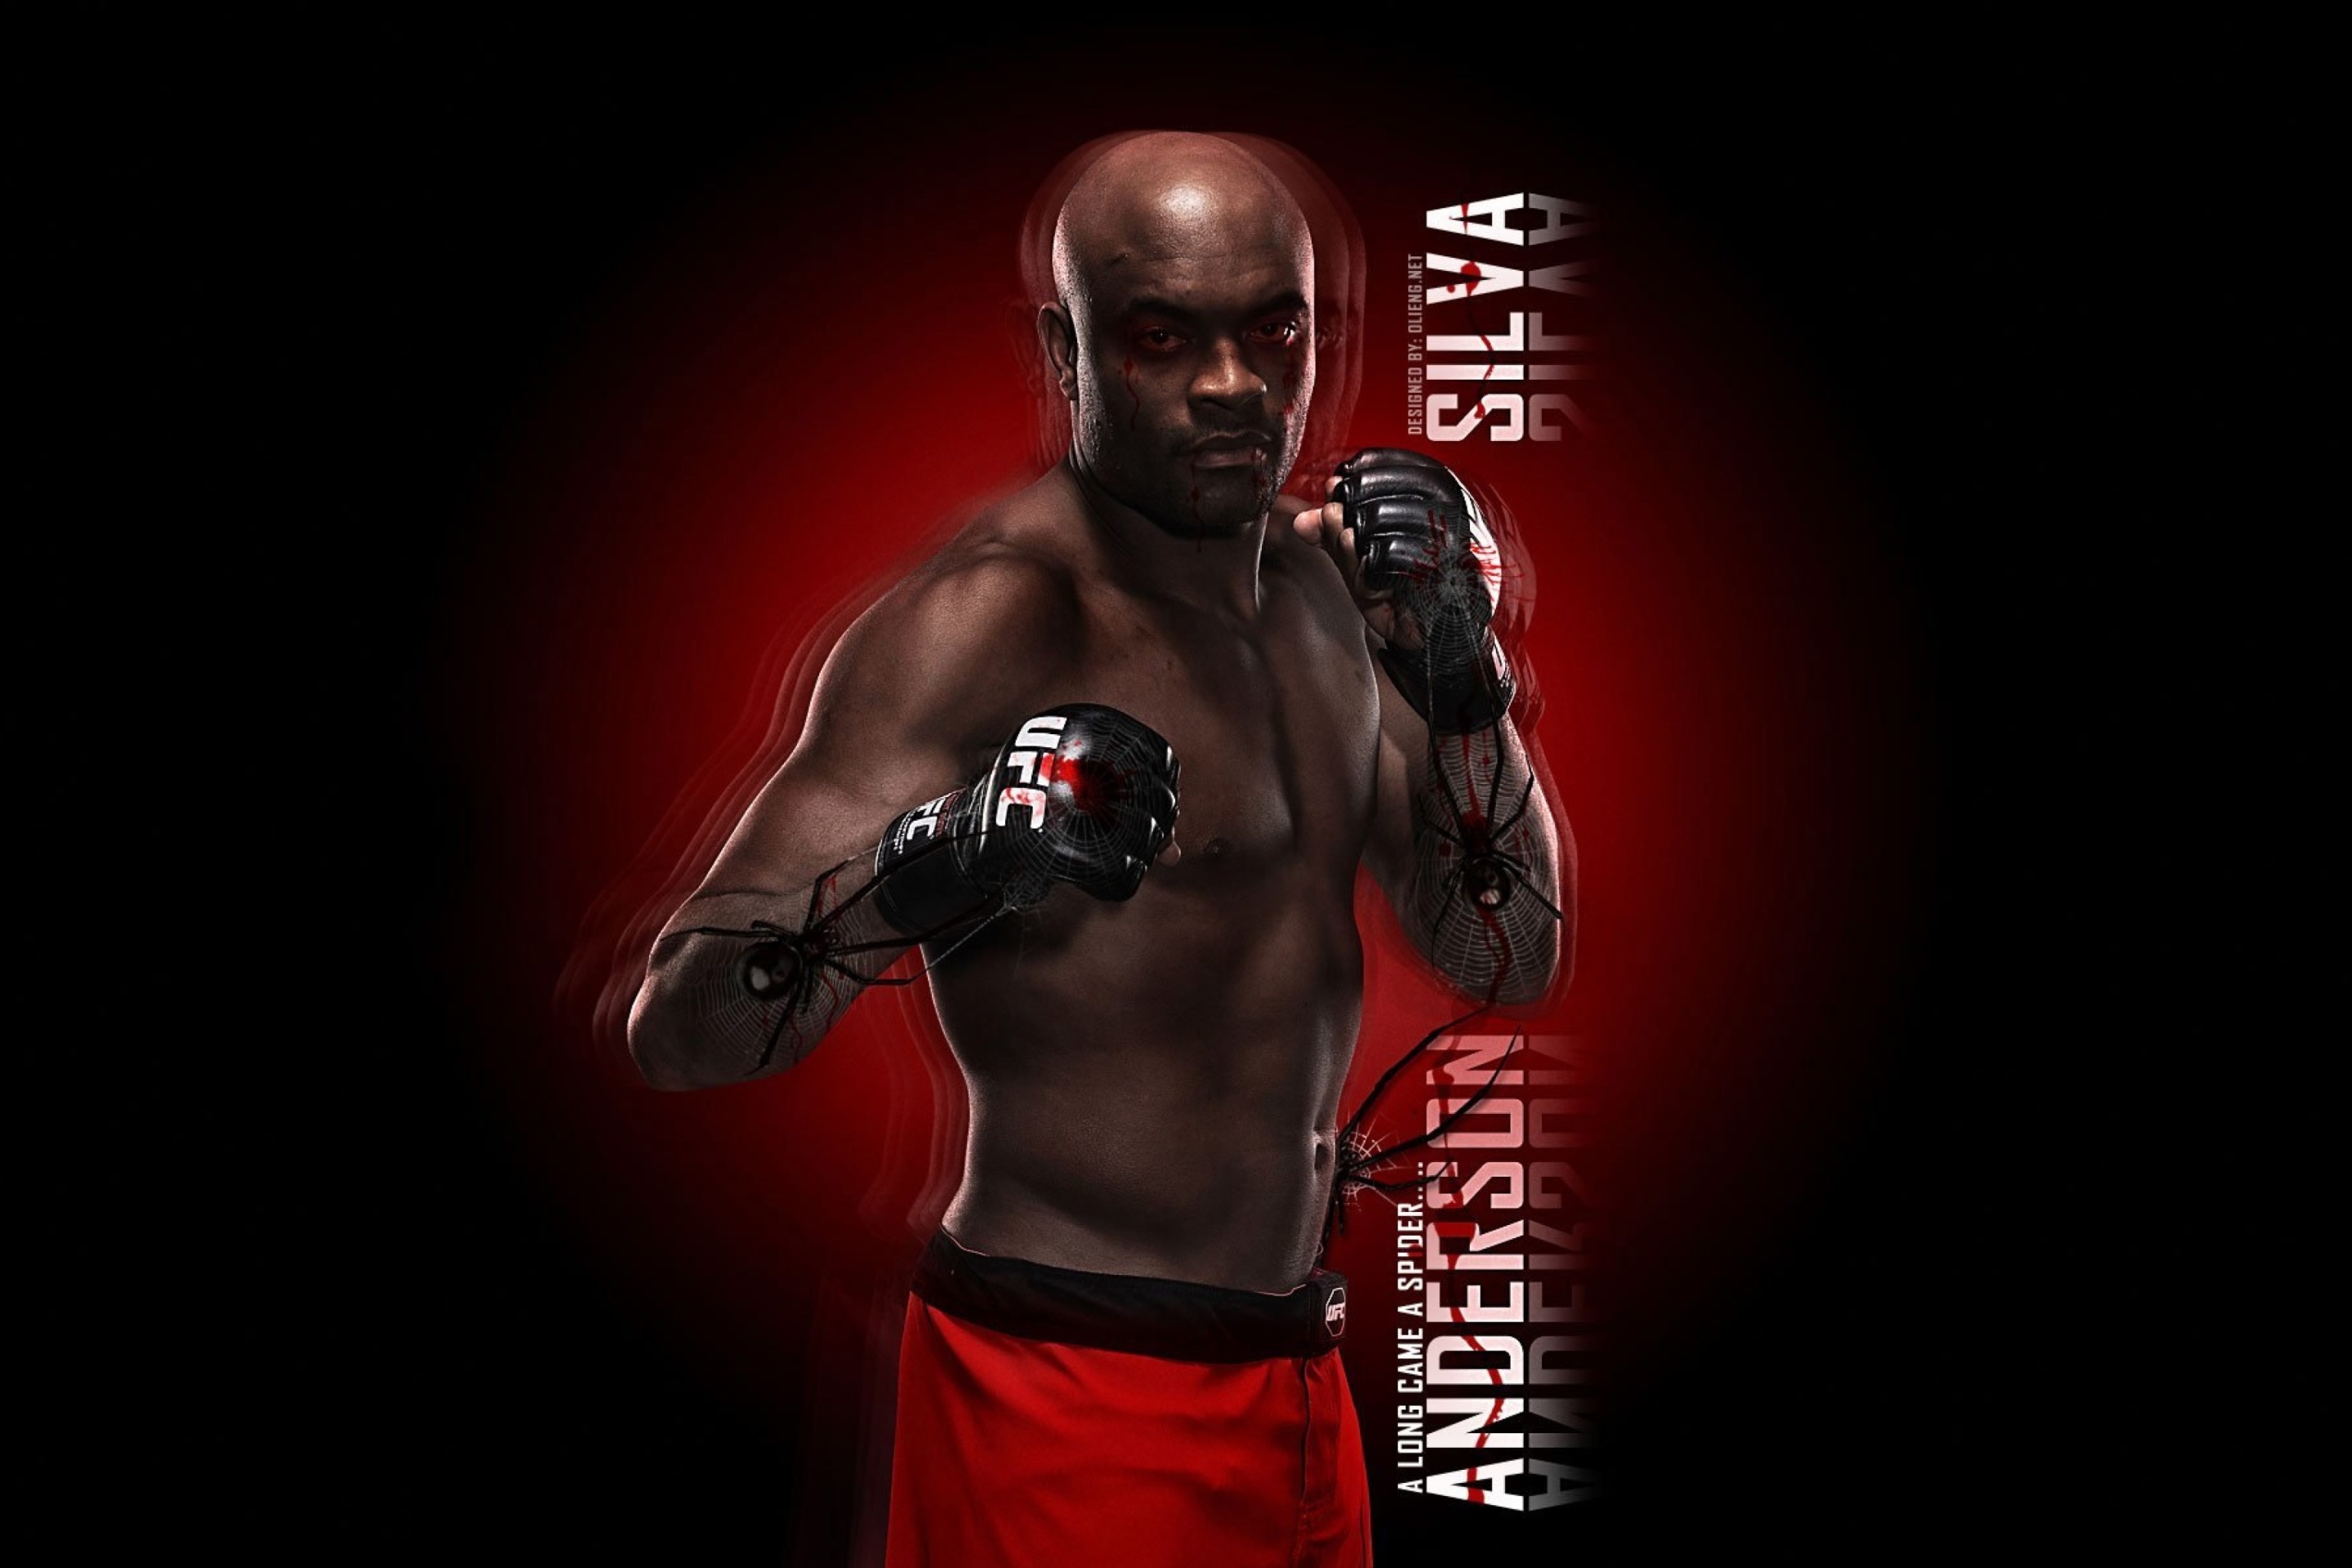 Anderson Silva UFC wallpaper 2880x1920